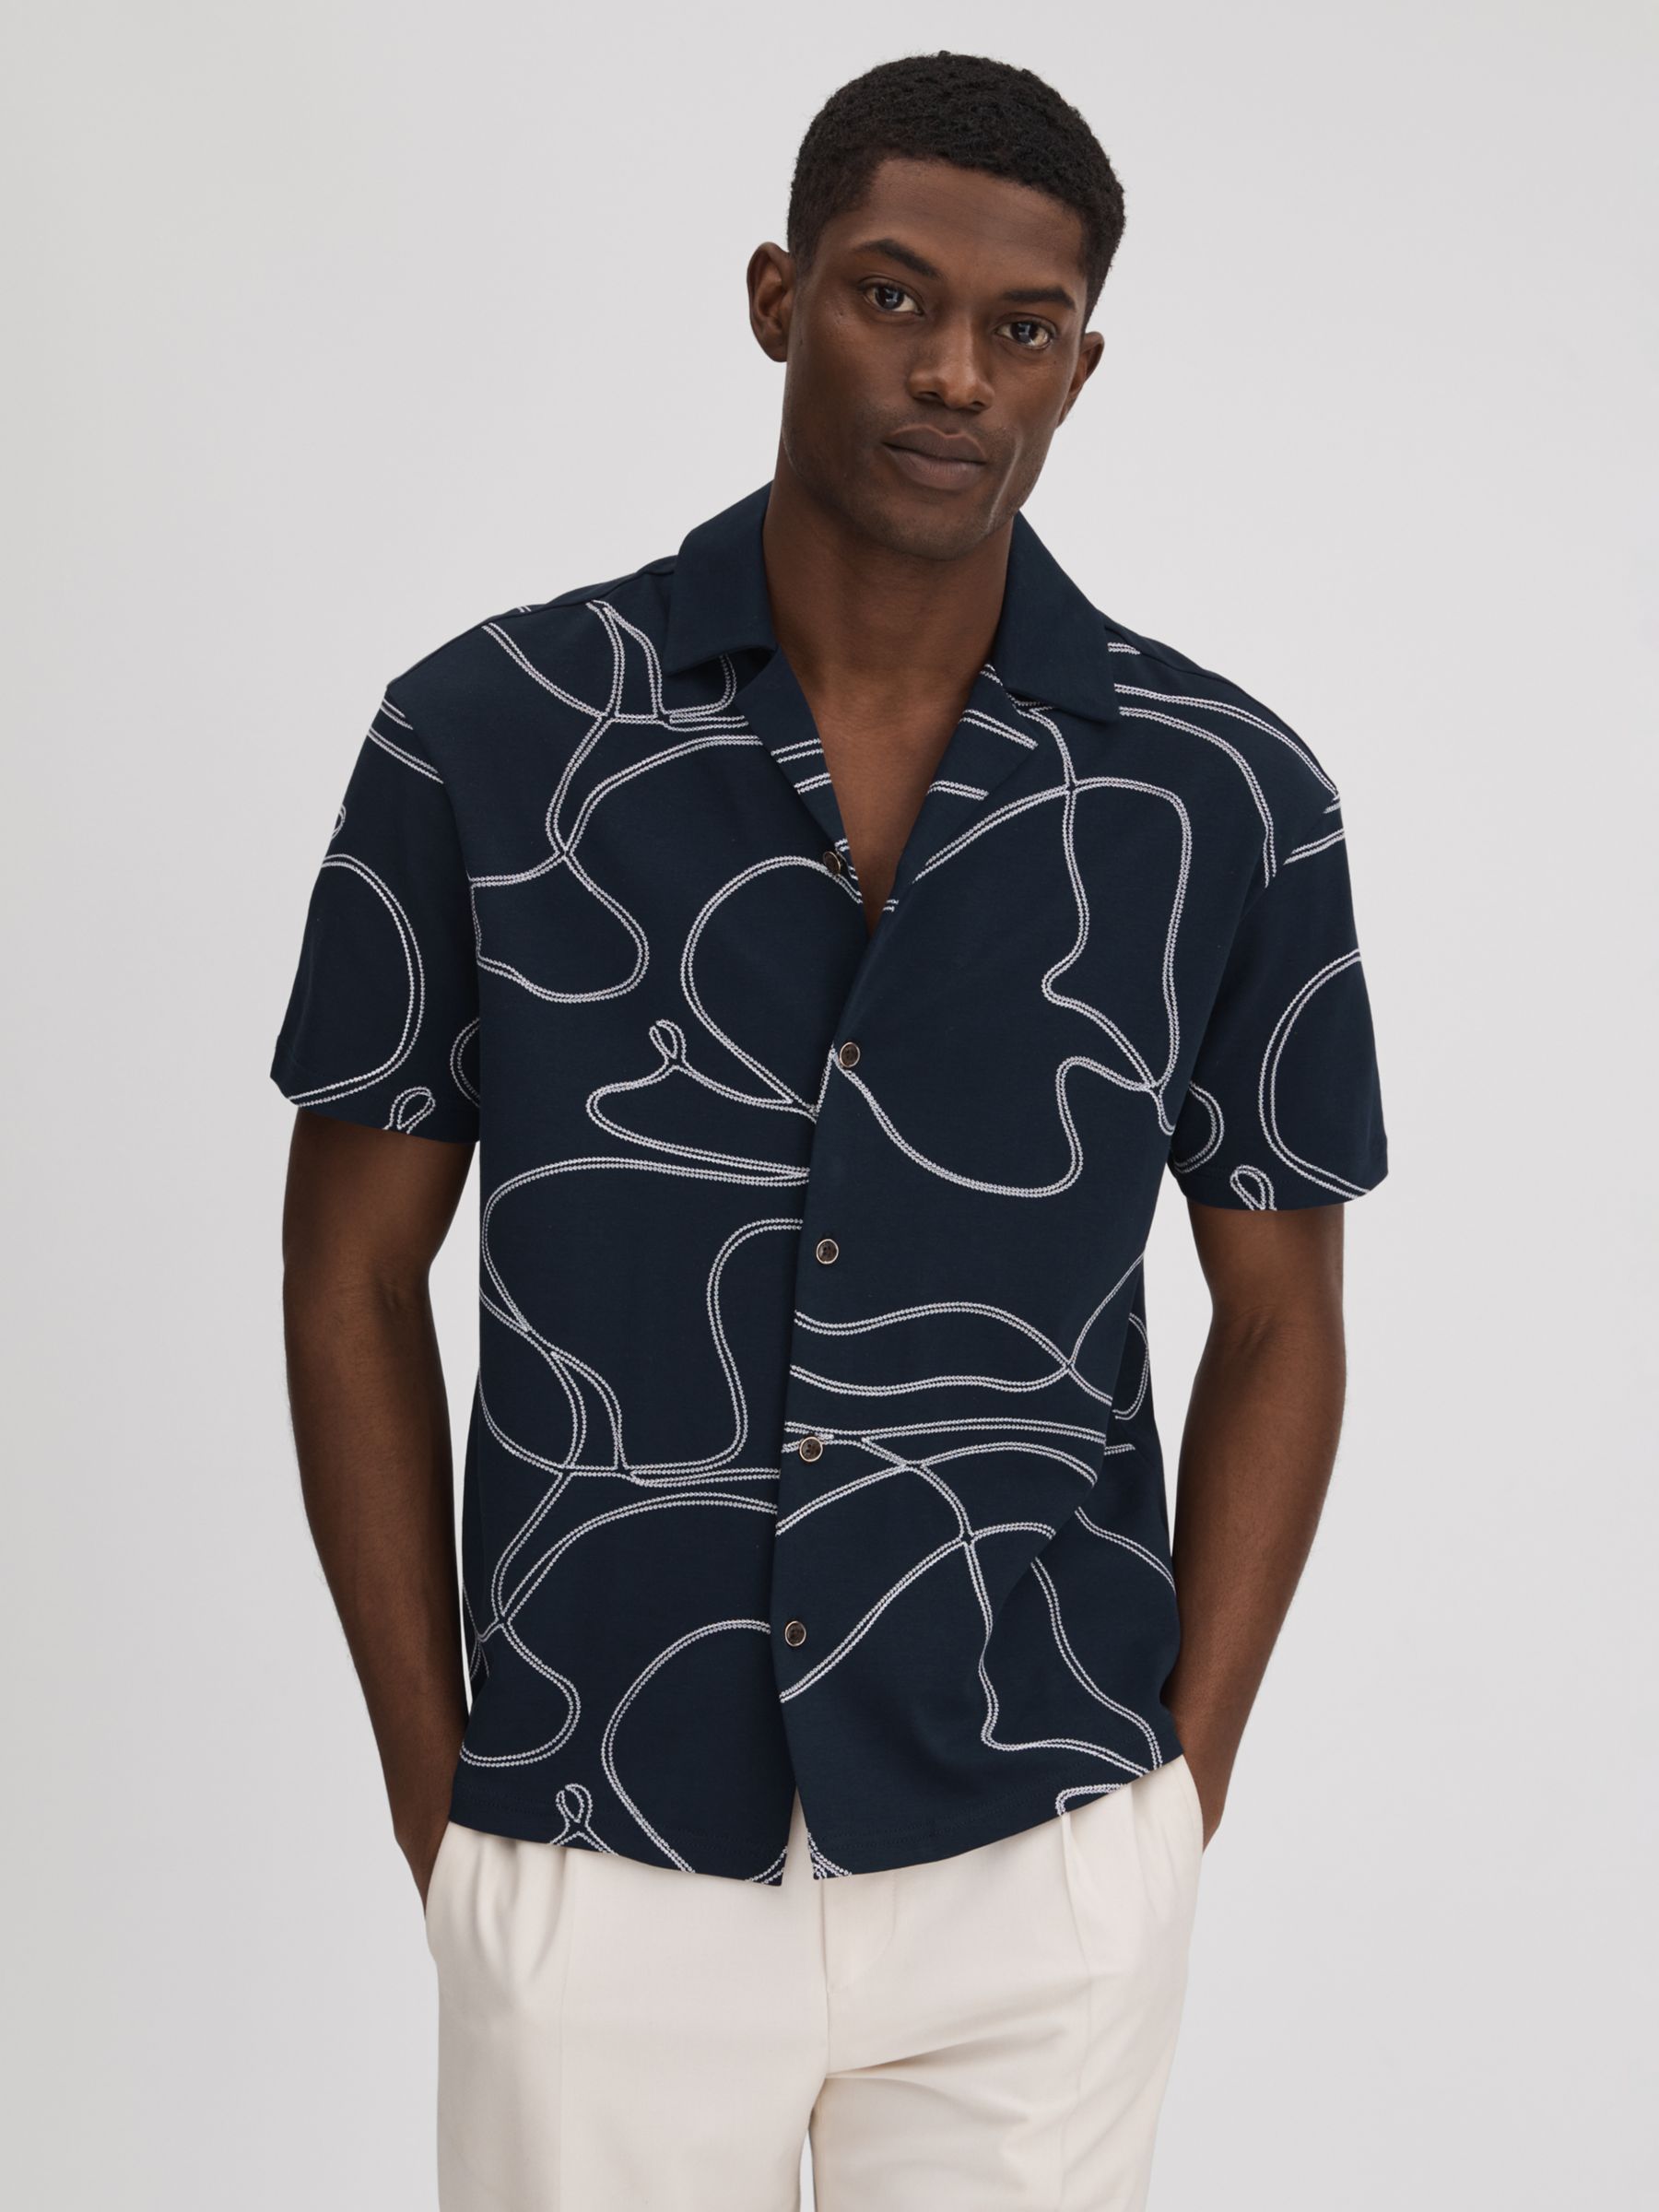 Reiss Menton Short Sleeve Swirl Embroidered Shirt, Blue/White, S